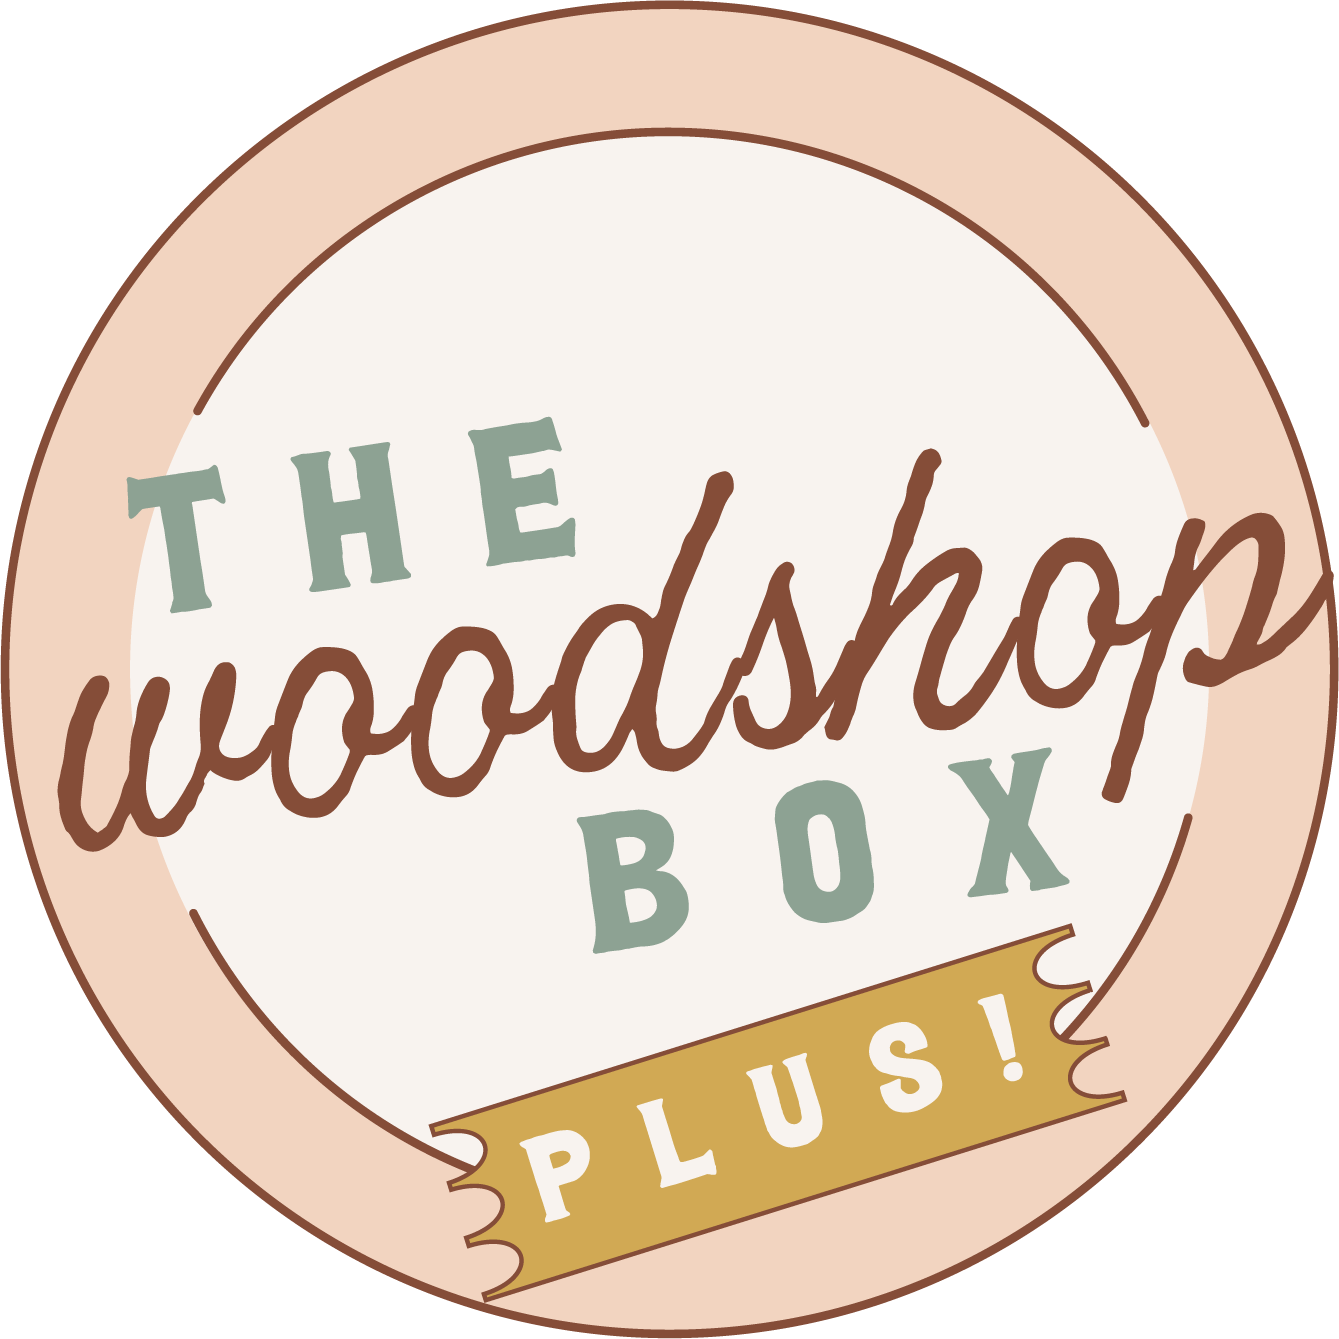 Woodshop Box